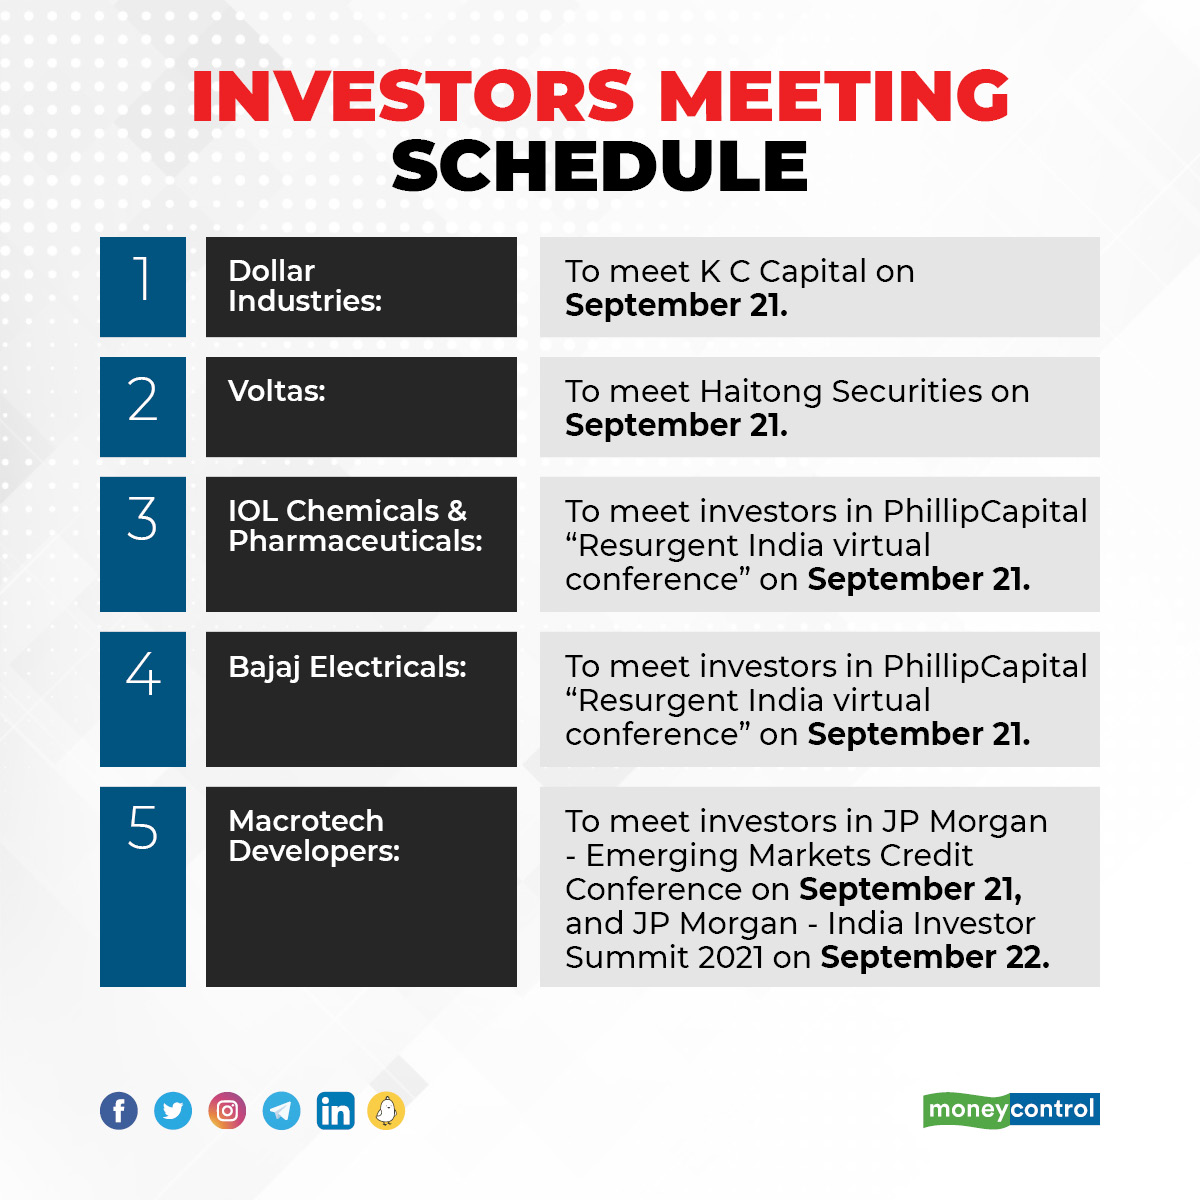 Investors Meeting Schedule: